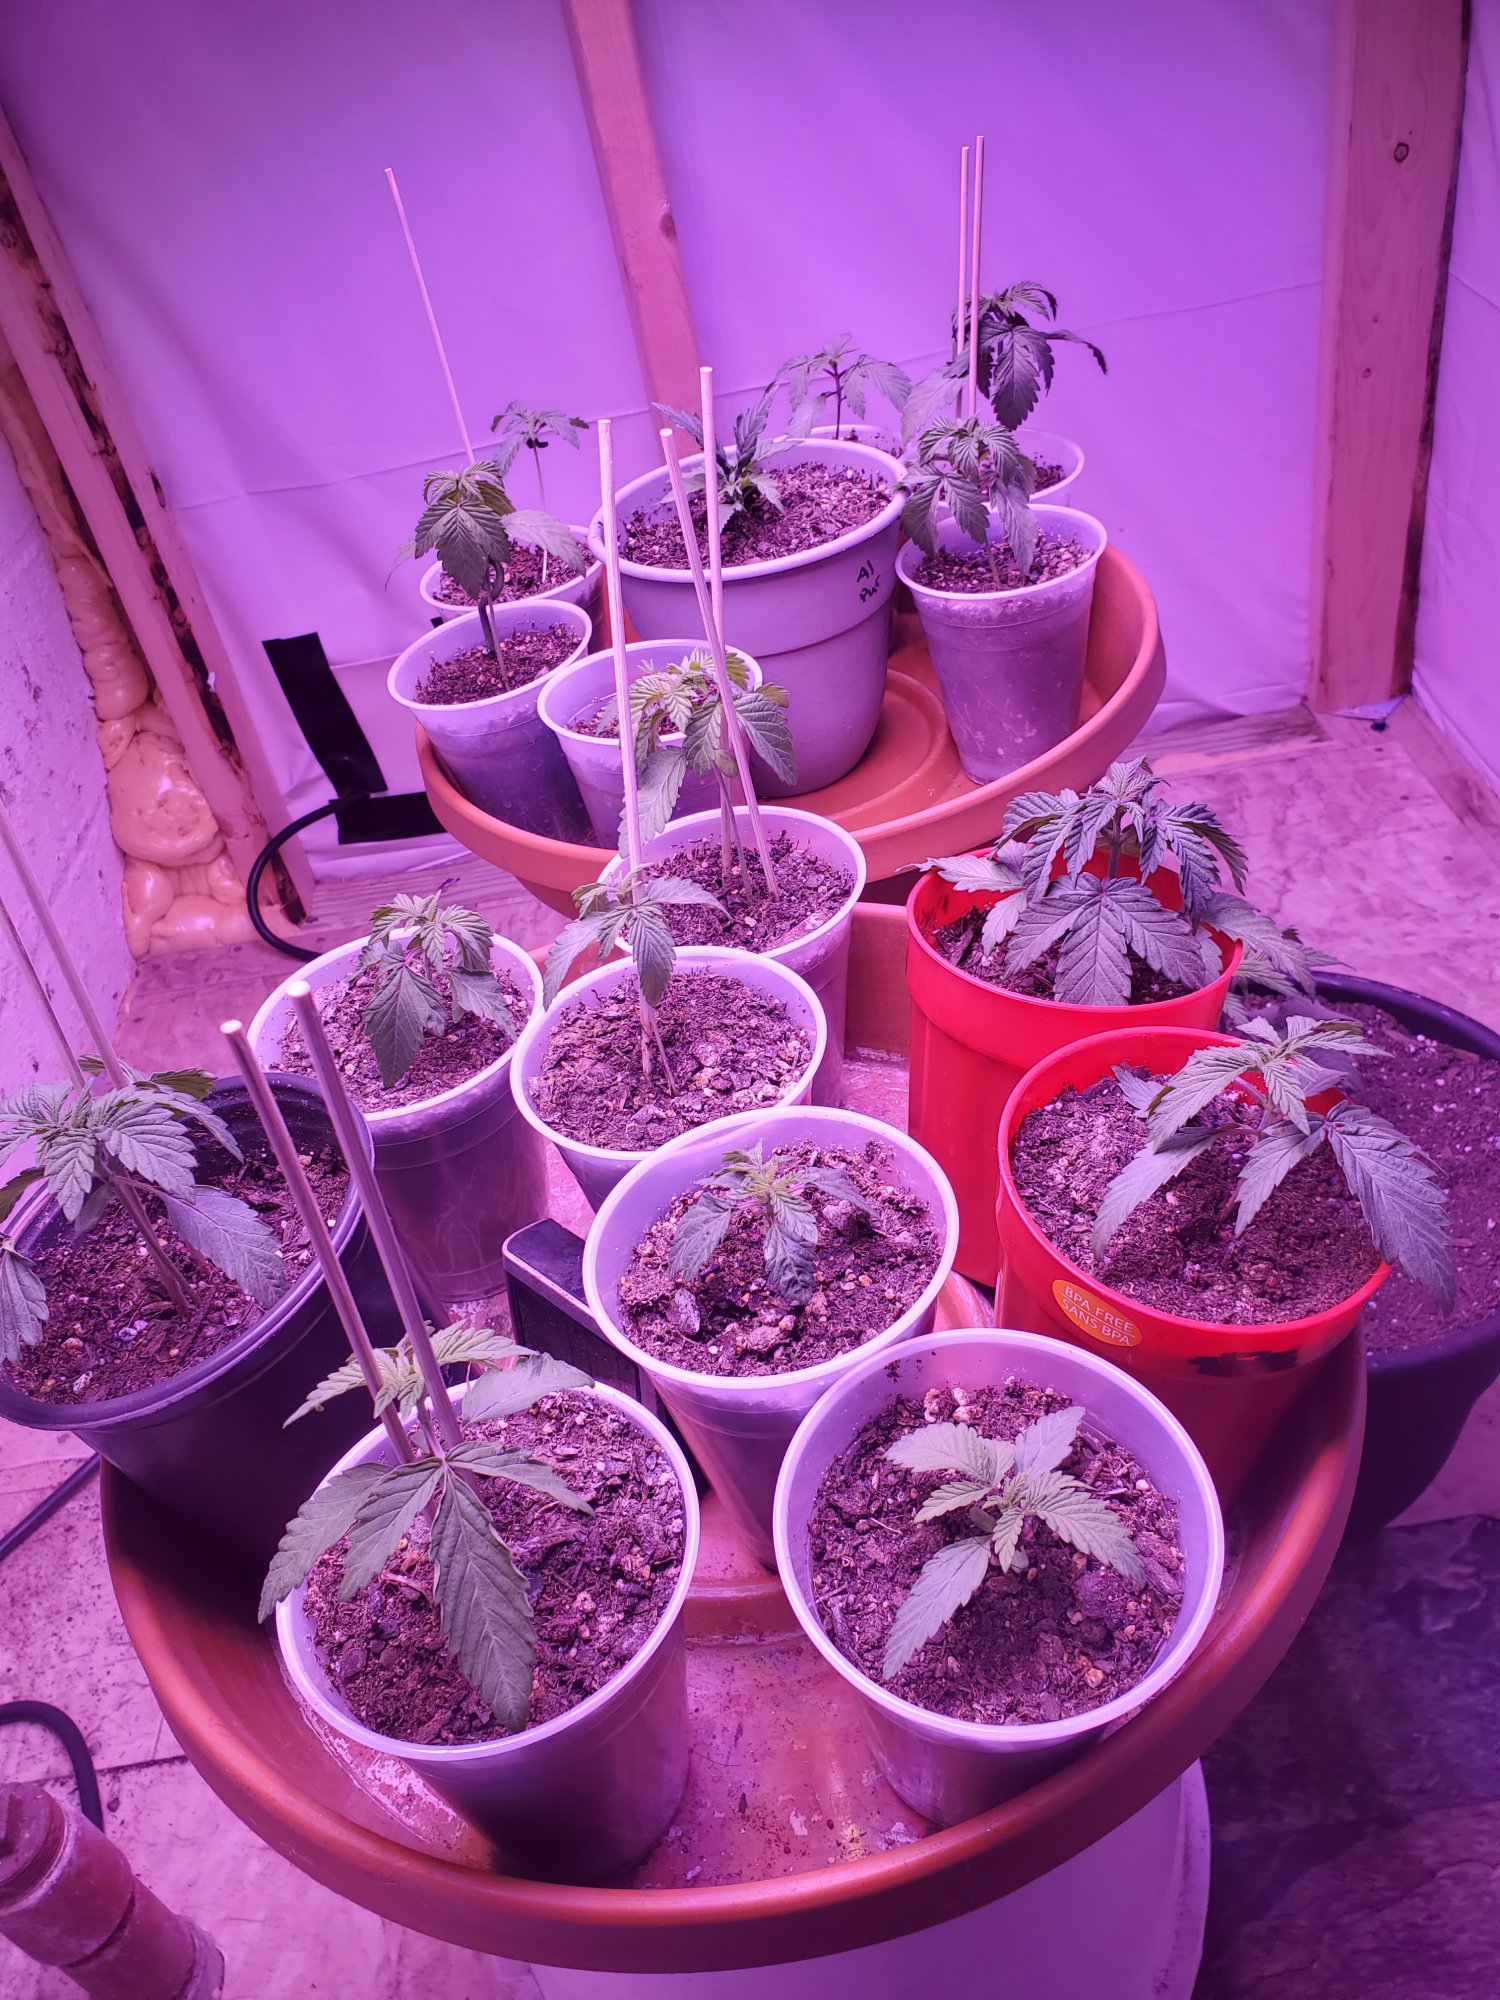 Droopy seedlings